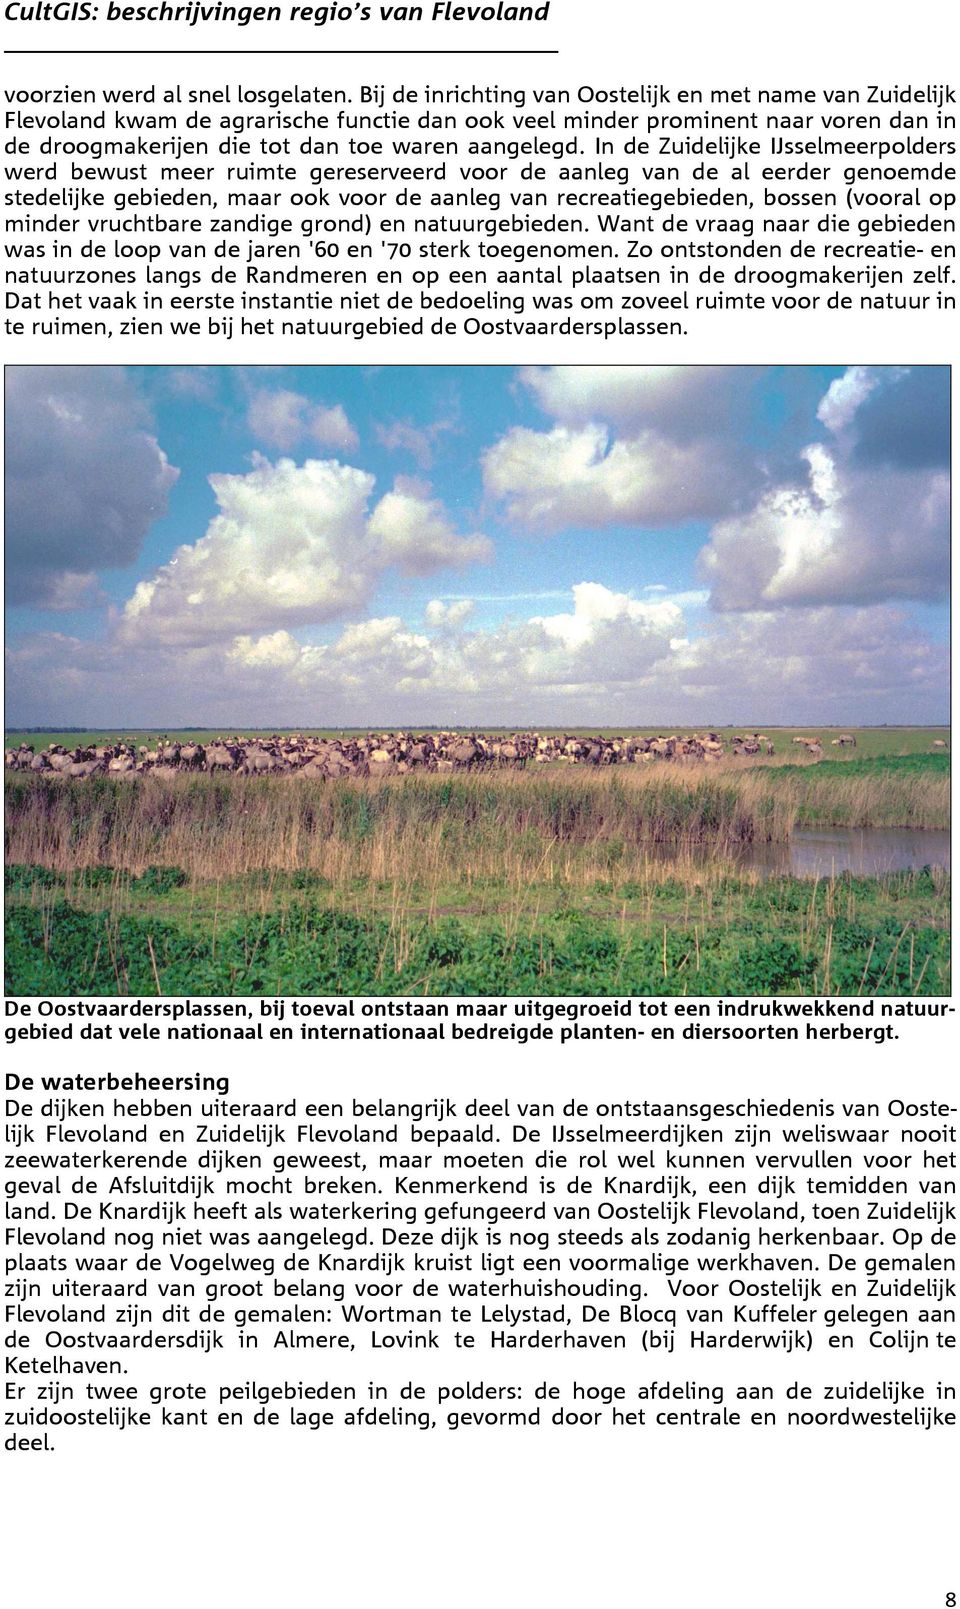 In de Zuidelijke IJsselmeerpolders werd bewust meer ruimte gereserveerd voor de aanleg van de al eerder genoemde stedelijke gebieden, maar ook voor de aanleg van recreatiegebieden, bossen (vooral op